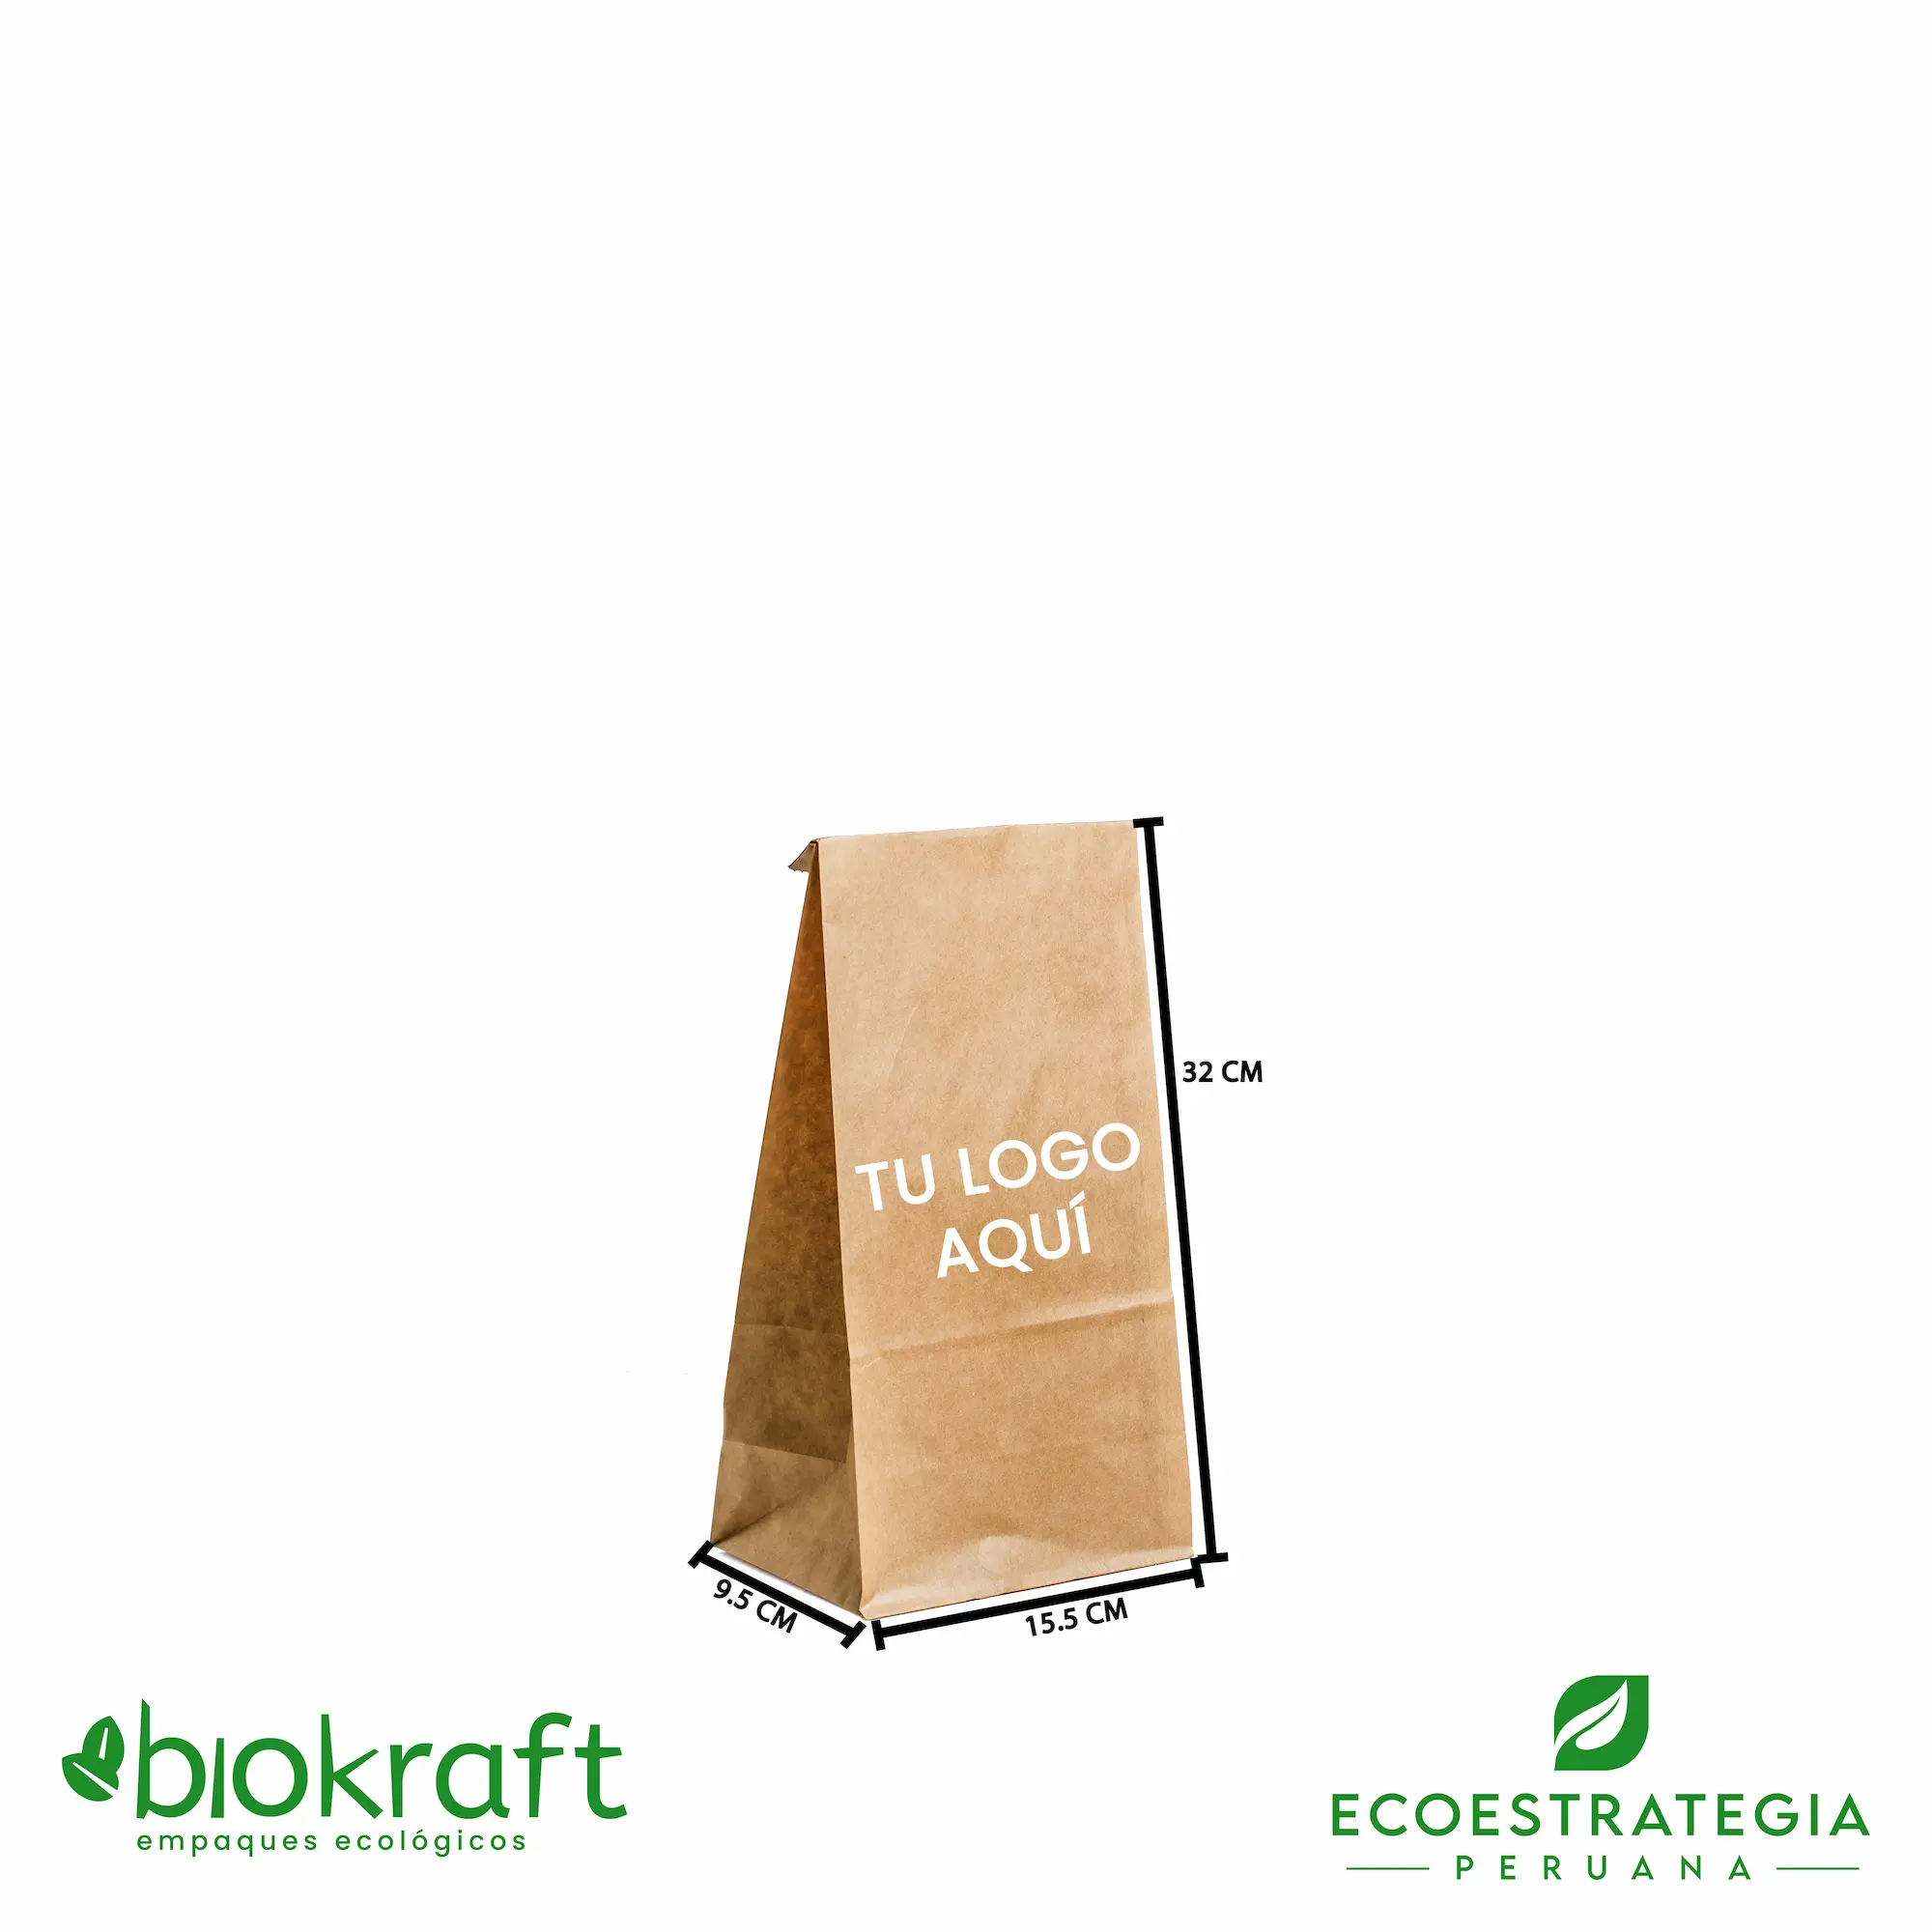 Esta bolsa de papel Kraft tiene un grosor de 60 gr y un peso de 13gr. Bolsa biodegradable de excelente gramaje y medida, ideal para comidas y productos ligeros. Cotiza ahora tus bolsas Kraft número 8